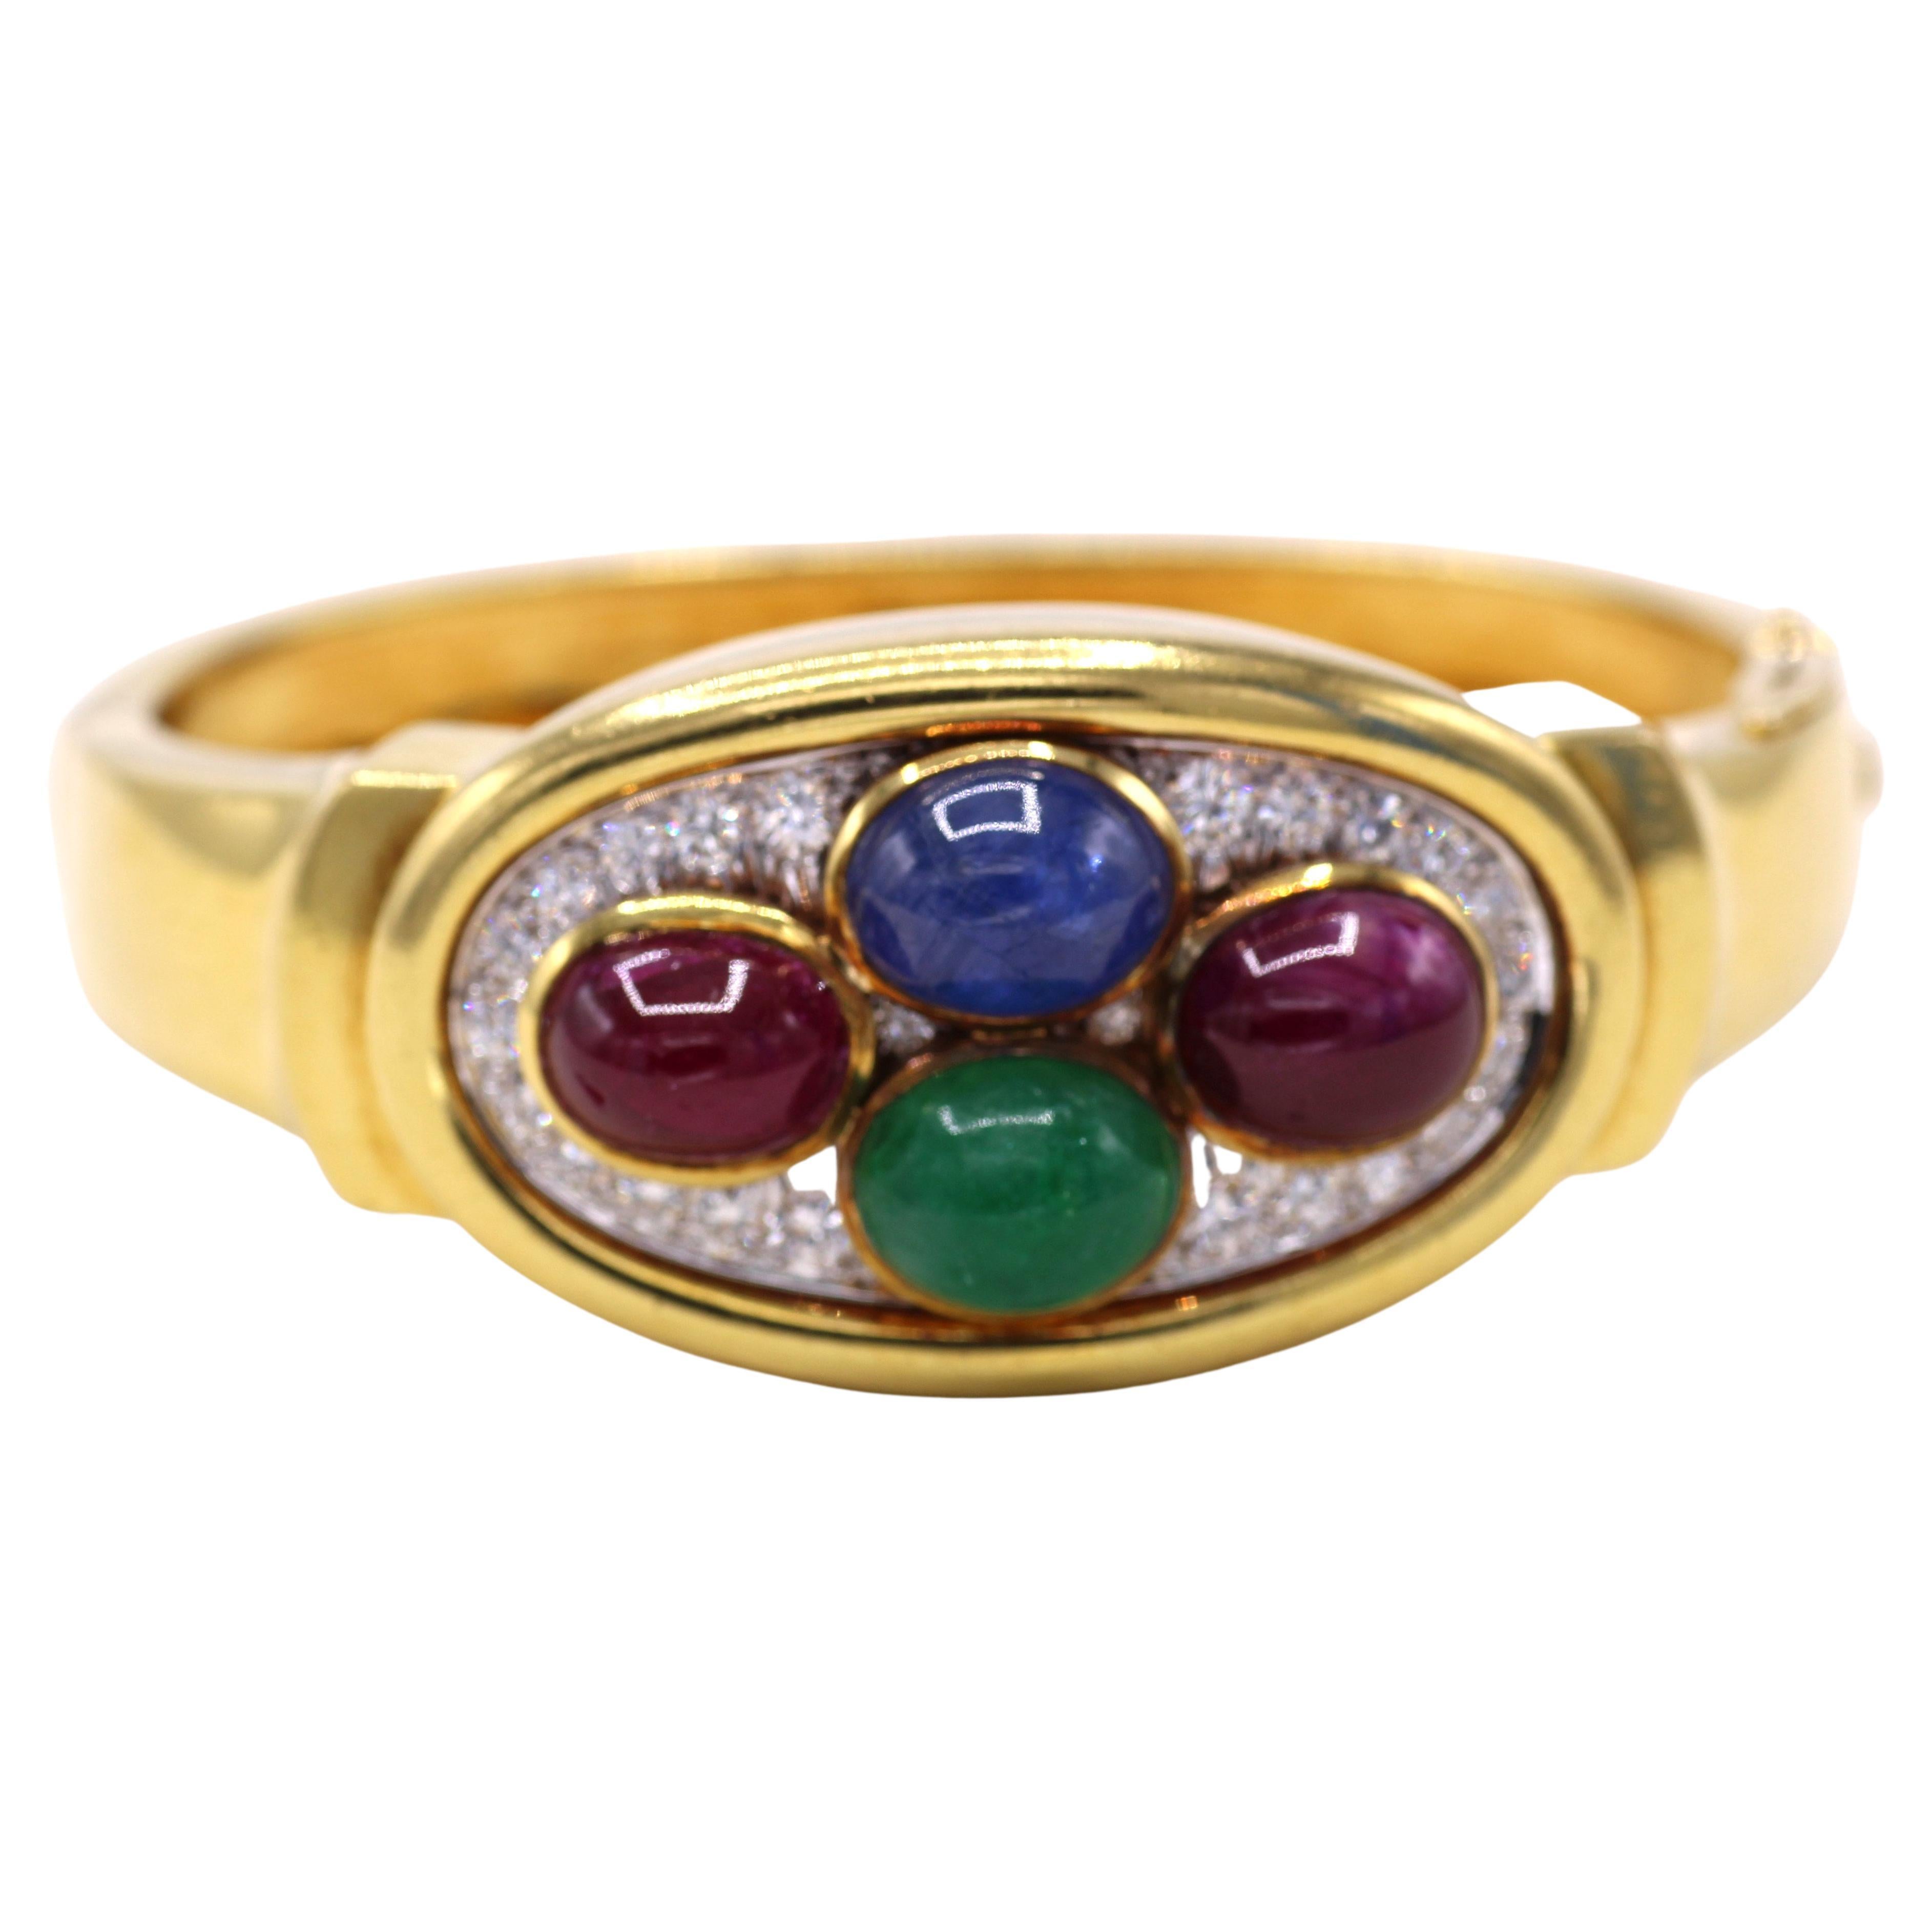 Magnifiquement conçu et réalisé de main de maître, ce bracelet bangle de David Webb datant d'environ 1980 présente un ensemble amusant et coloré de pierres précieuses travaillées en platine et en or jaune 18 carats. deux rubis cabochons, un saphir